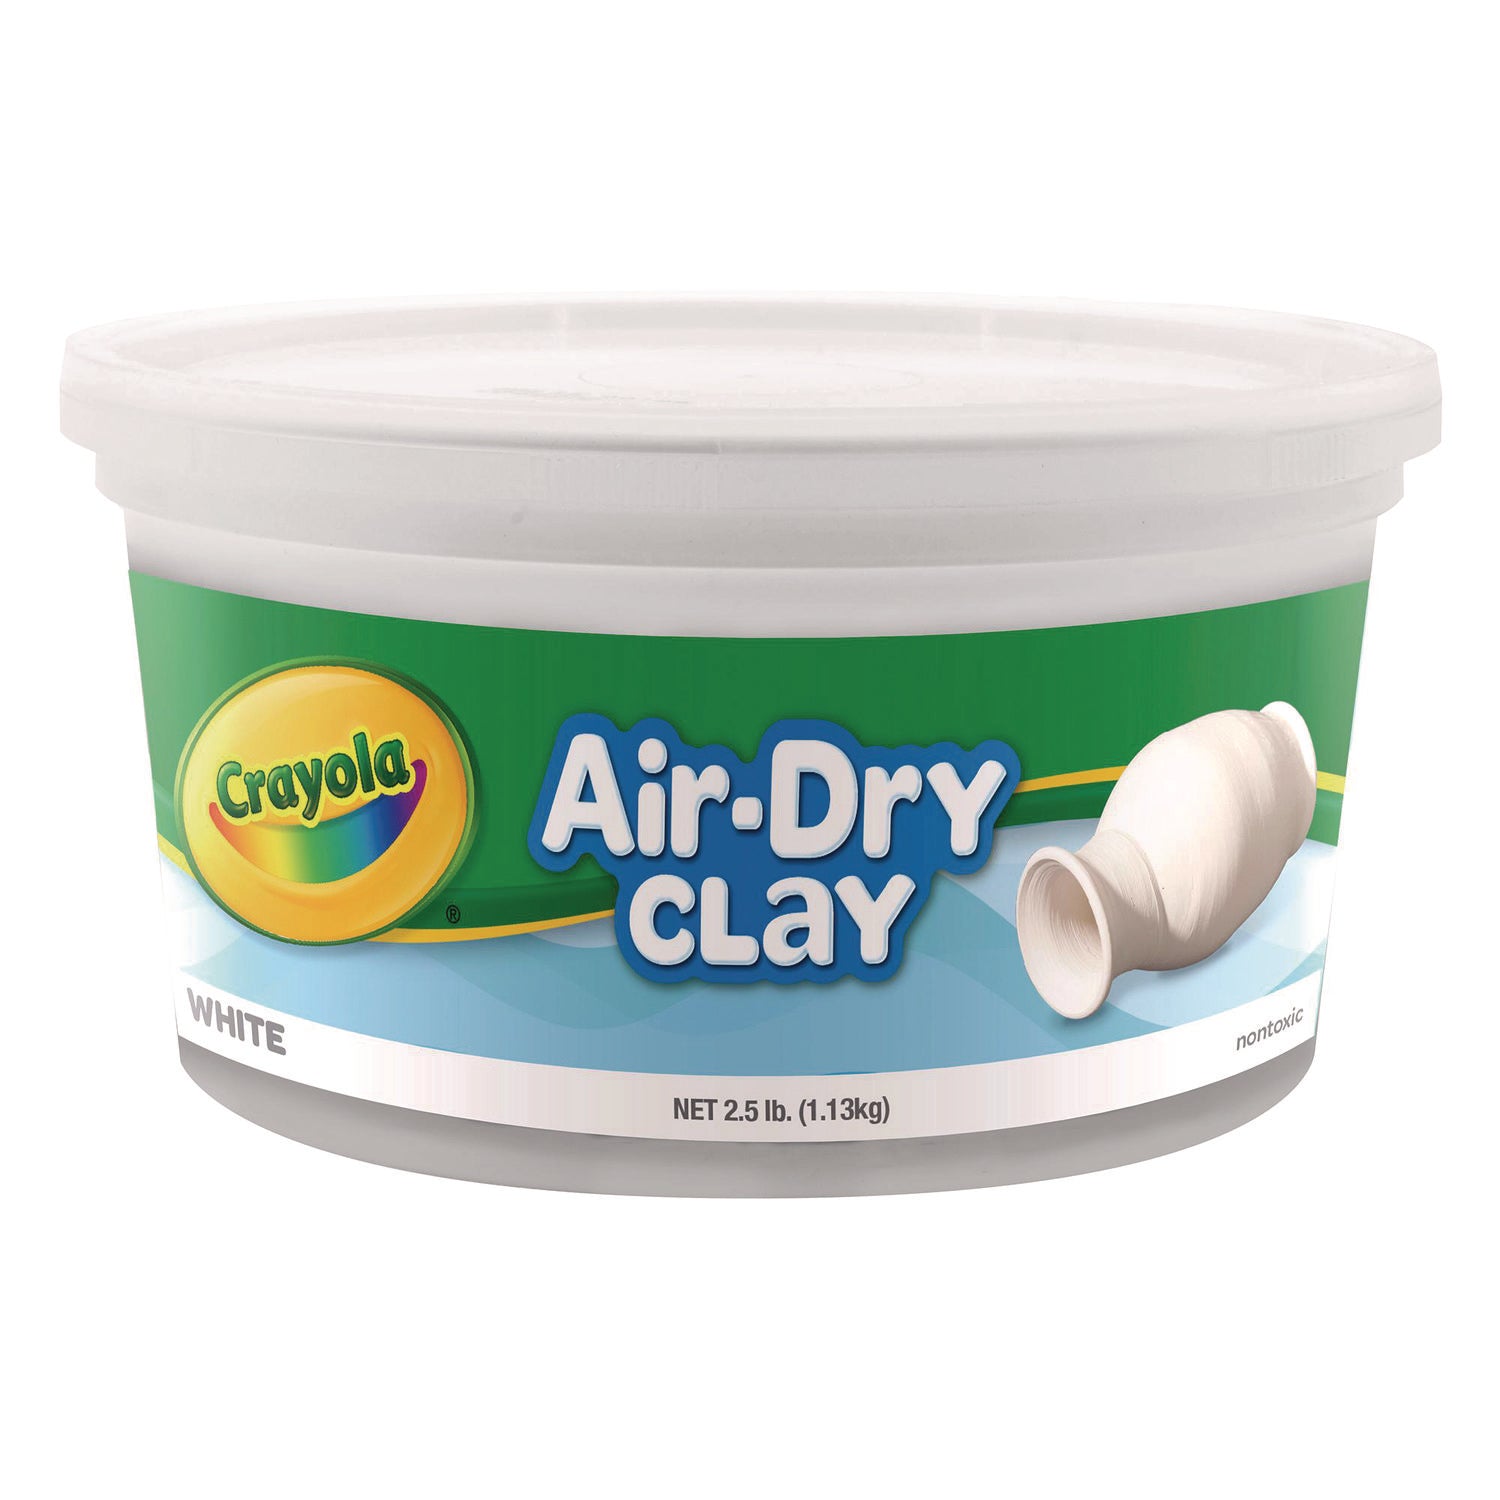 Air-Dry Clay,White, 2.5 lbs - 1